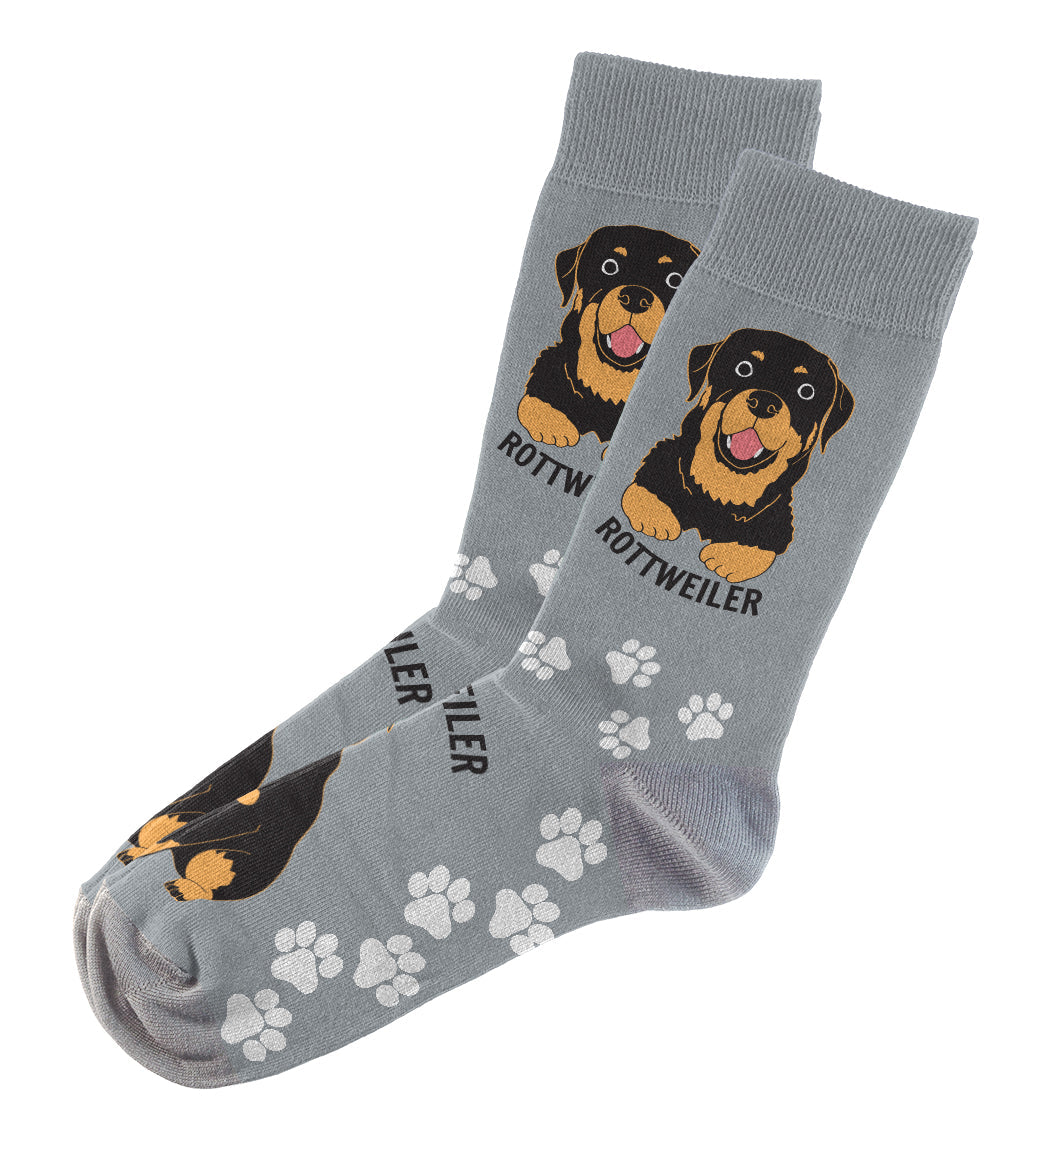 Rottweiler Socks Unisex Unique Fun Design   Fits All, 70% Cotton, 25% Spandex, 5% Elastic